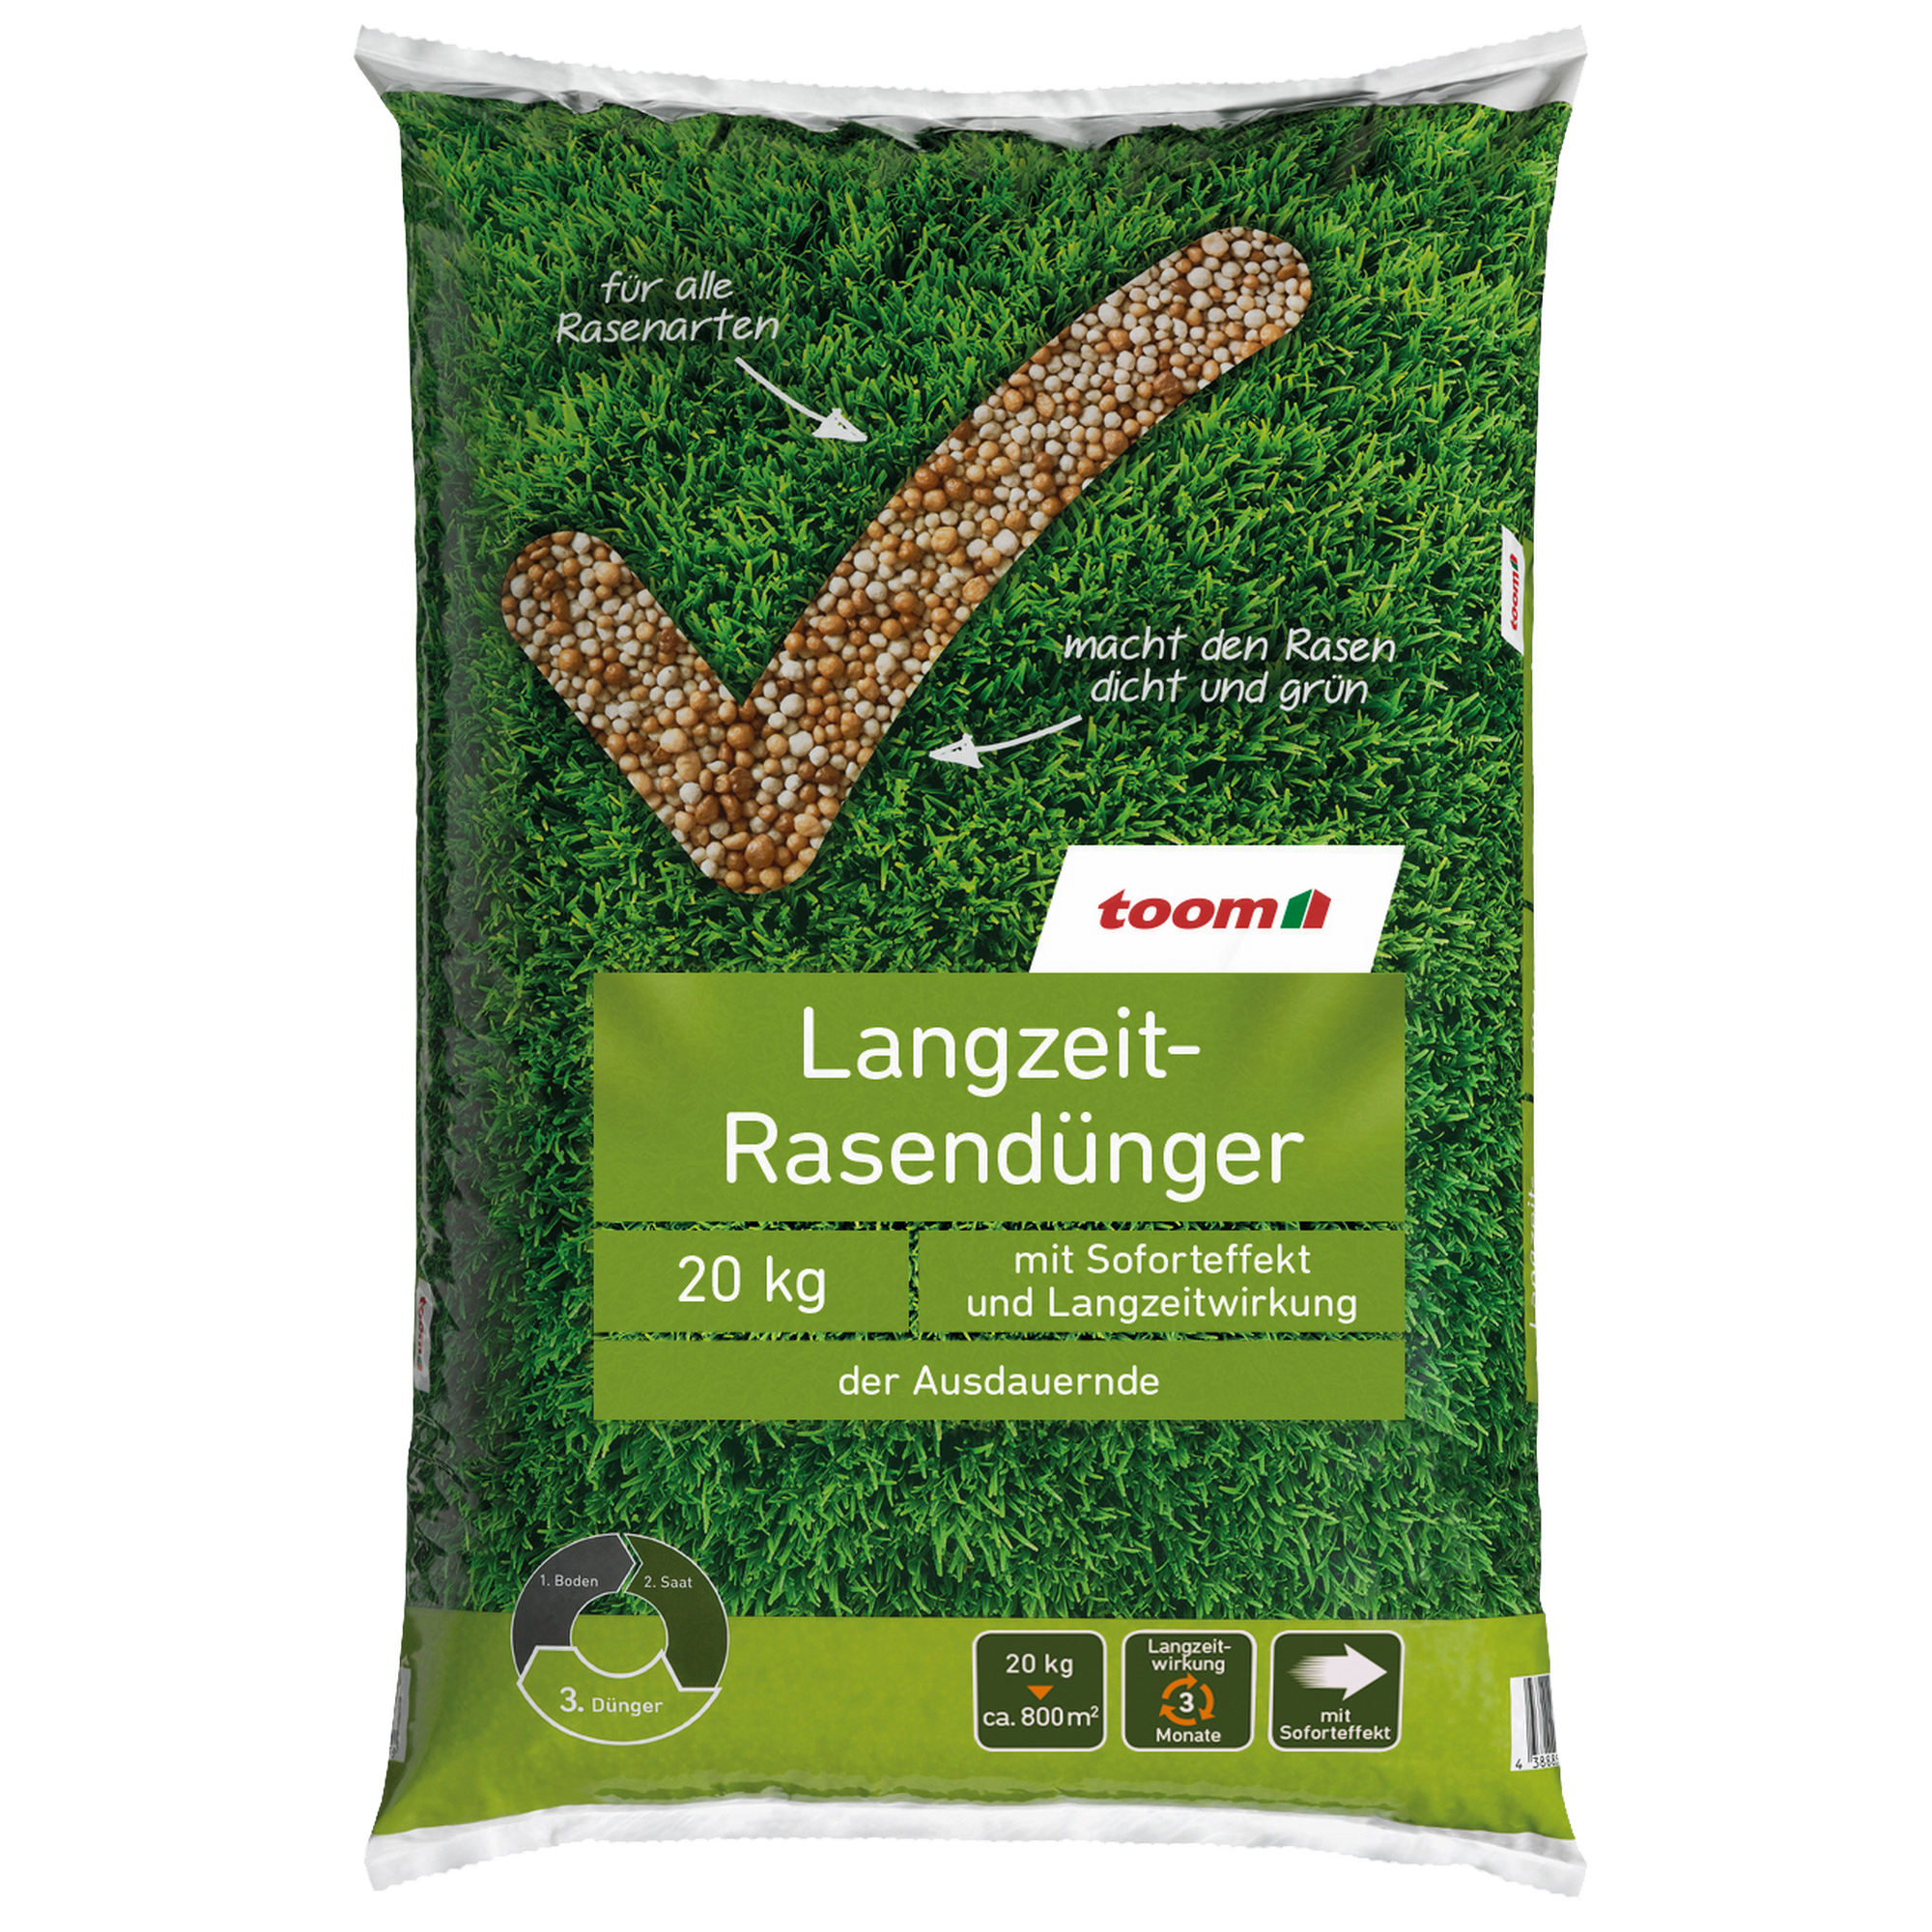 Langzeit-Rasendünger 20 kg für 800 m² + product picture